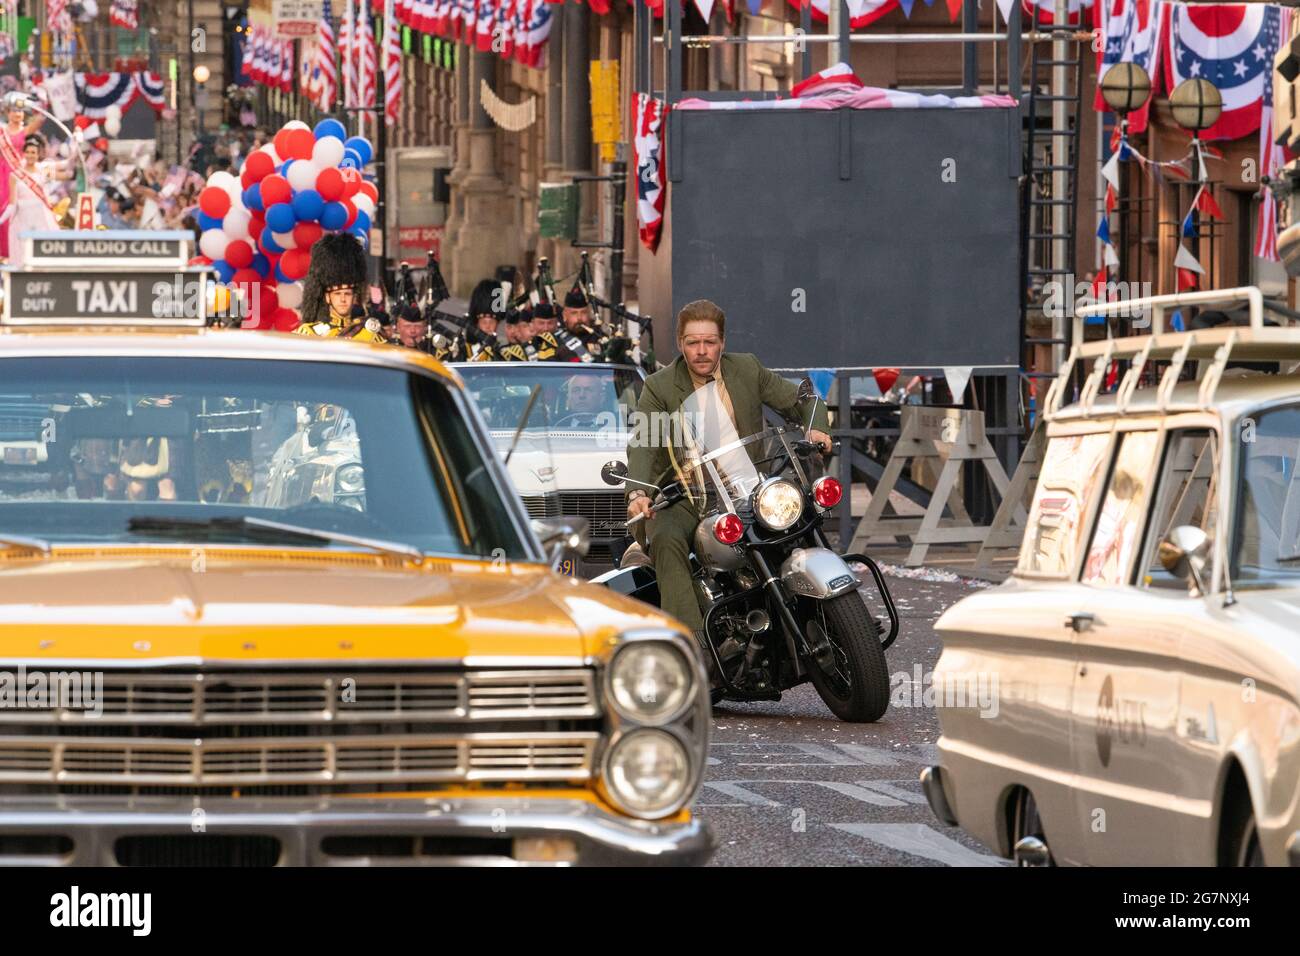 Glasgow, Schottland, Großbritannien - Indiana Jones Dreharbeiten: Boyd Holbrook fährt doppelt auf dem Motorrad, nachdem er während der Dreharbeiten zum neuen Indiana Jones-Film durch die Parade gefahren ist.Quelle: Kay Roxby/Alamy Live News Stockfoto